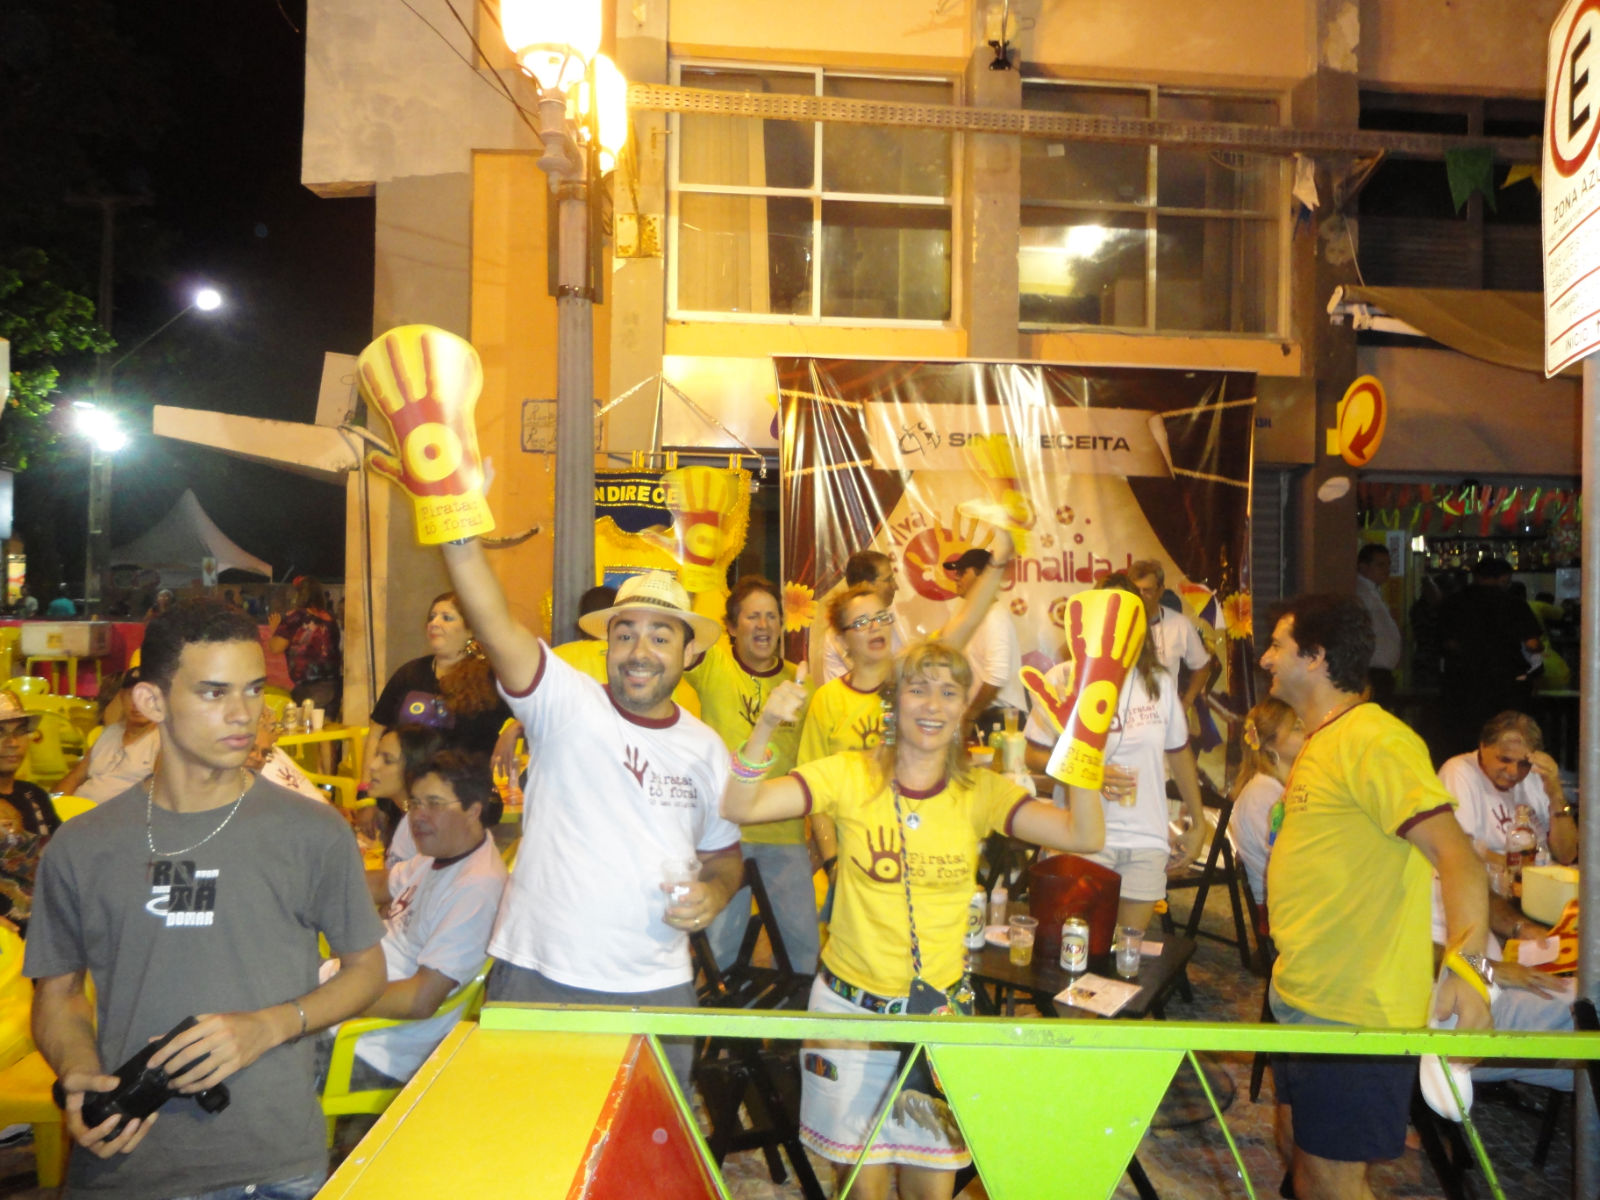 Sindireceita leva bloco “Pirata: tô fora!” para as ruas do Recife/PE